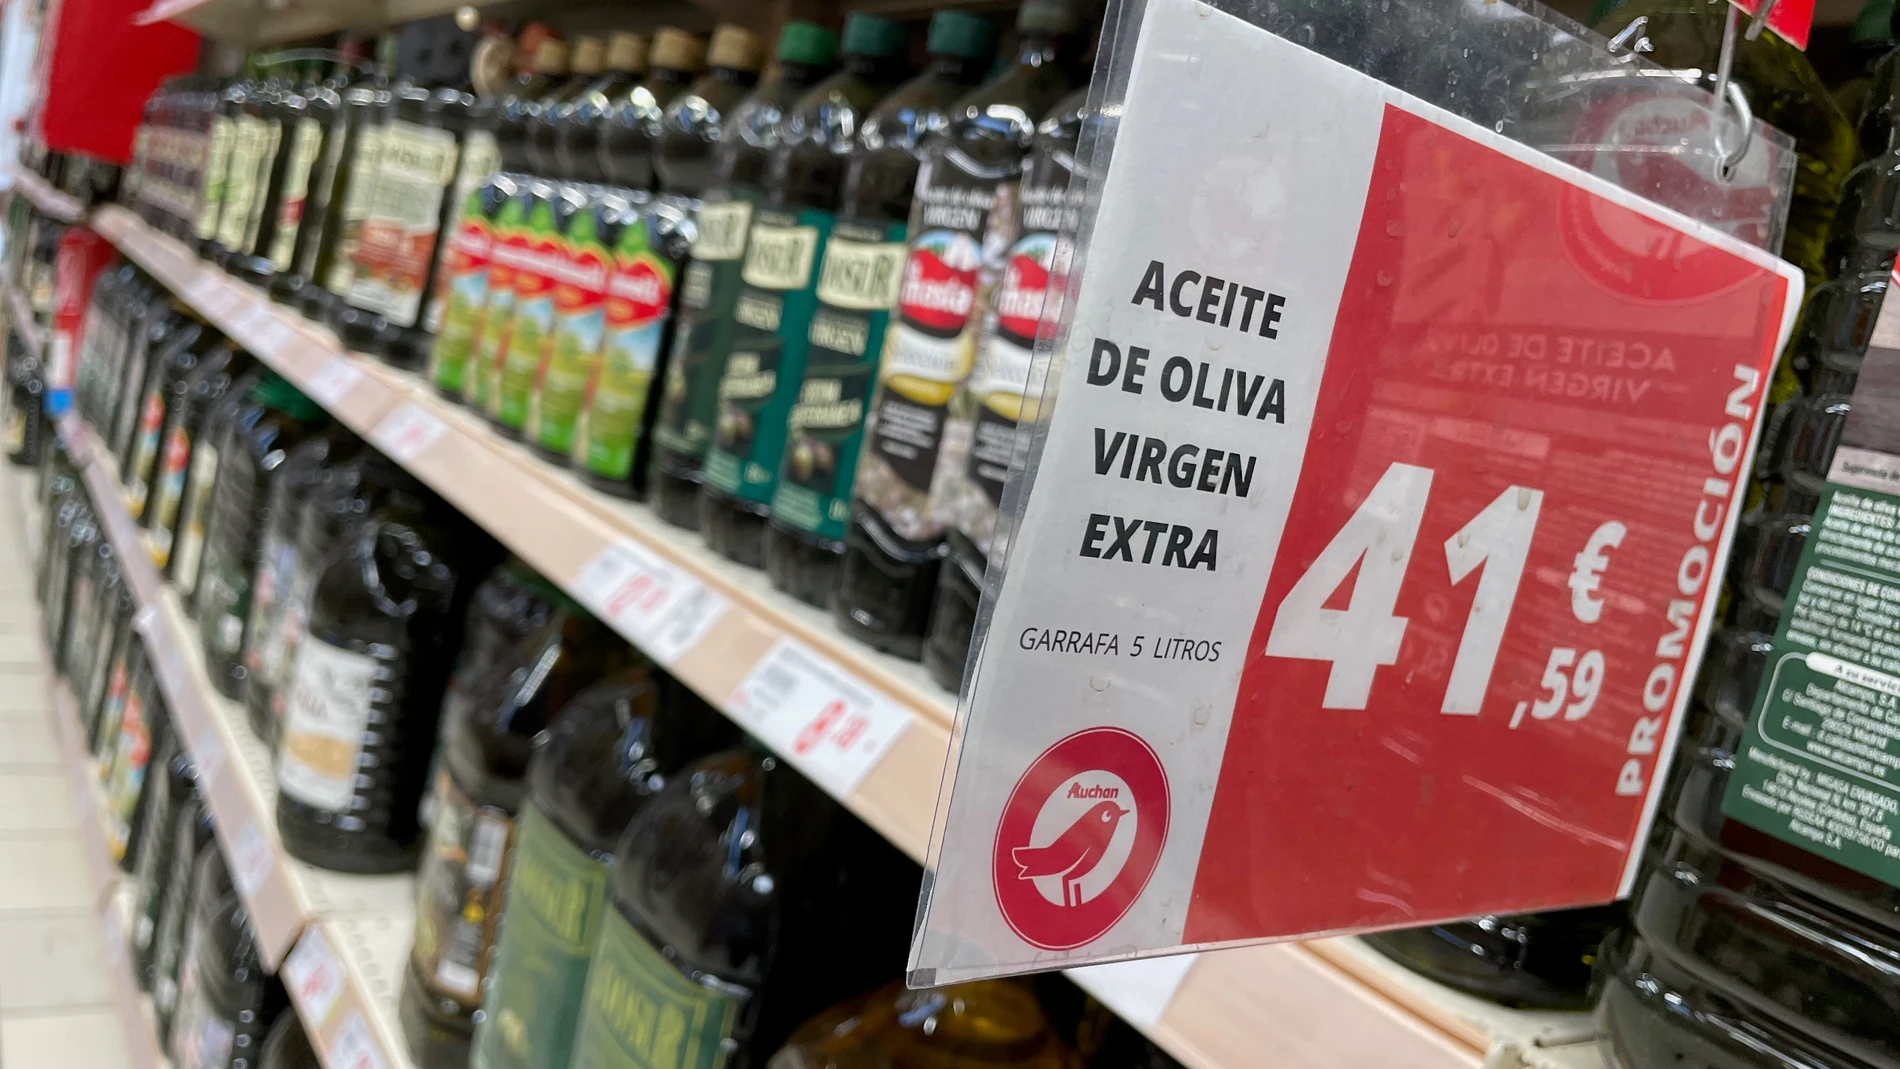 Botellas y garrafas de aceite de oliva. Algunas botellas llevan alarma por el alto precio de este. © Jesús G. Feria.